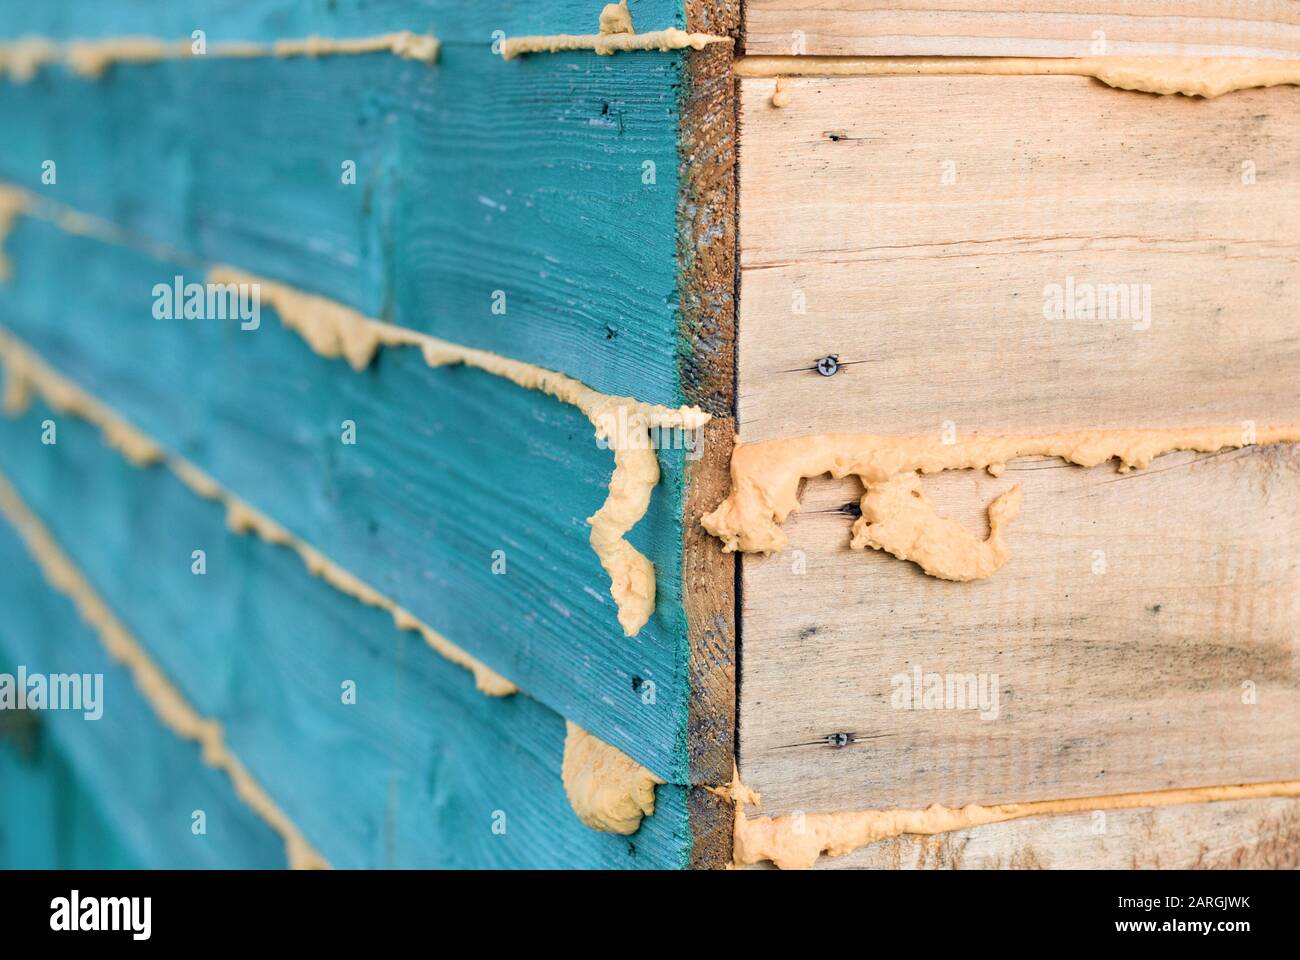 Angolo di casa in legno, cuciture riempite con schiuma di poliuretano per isolamento termico Foto Stock